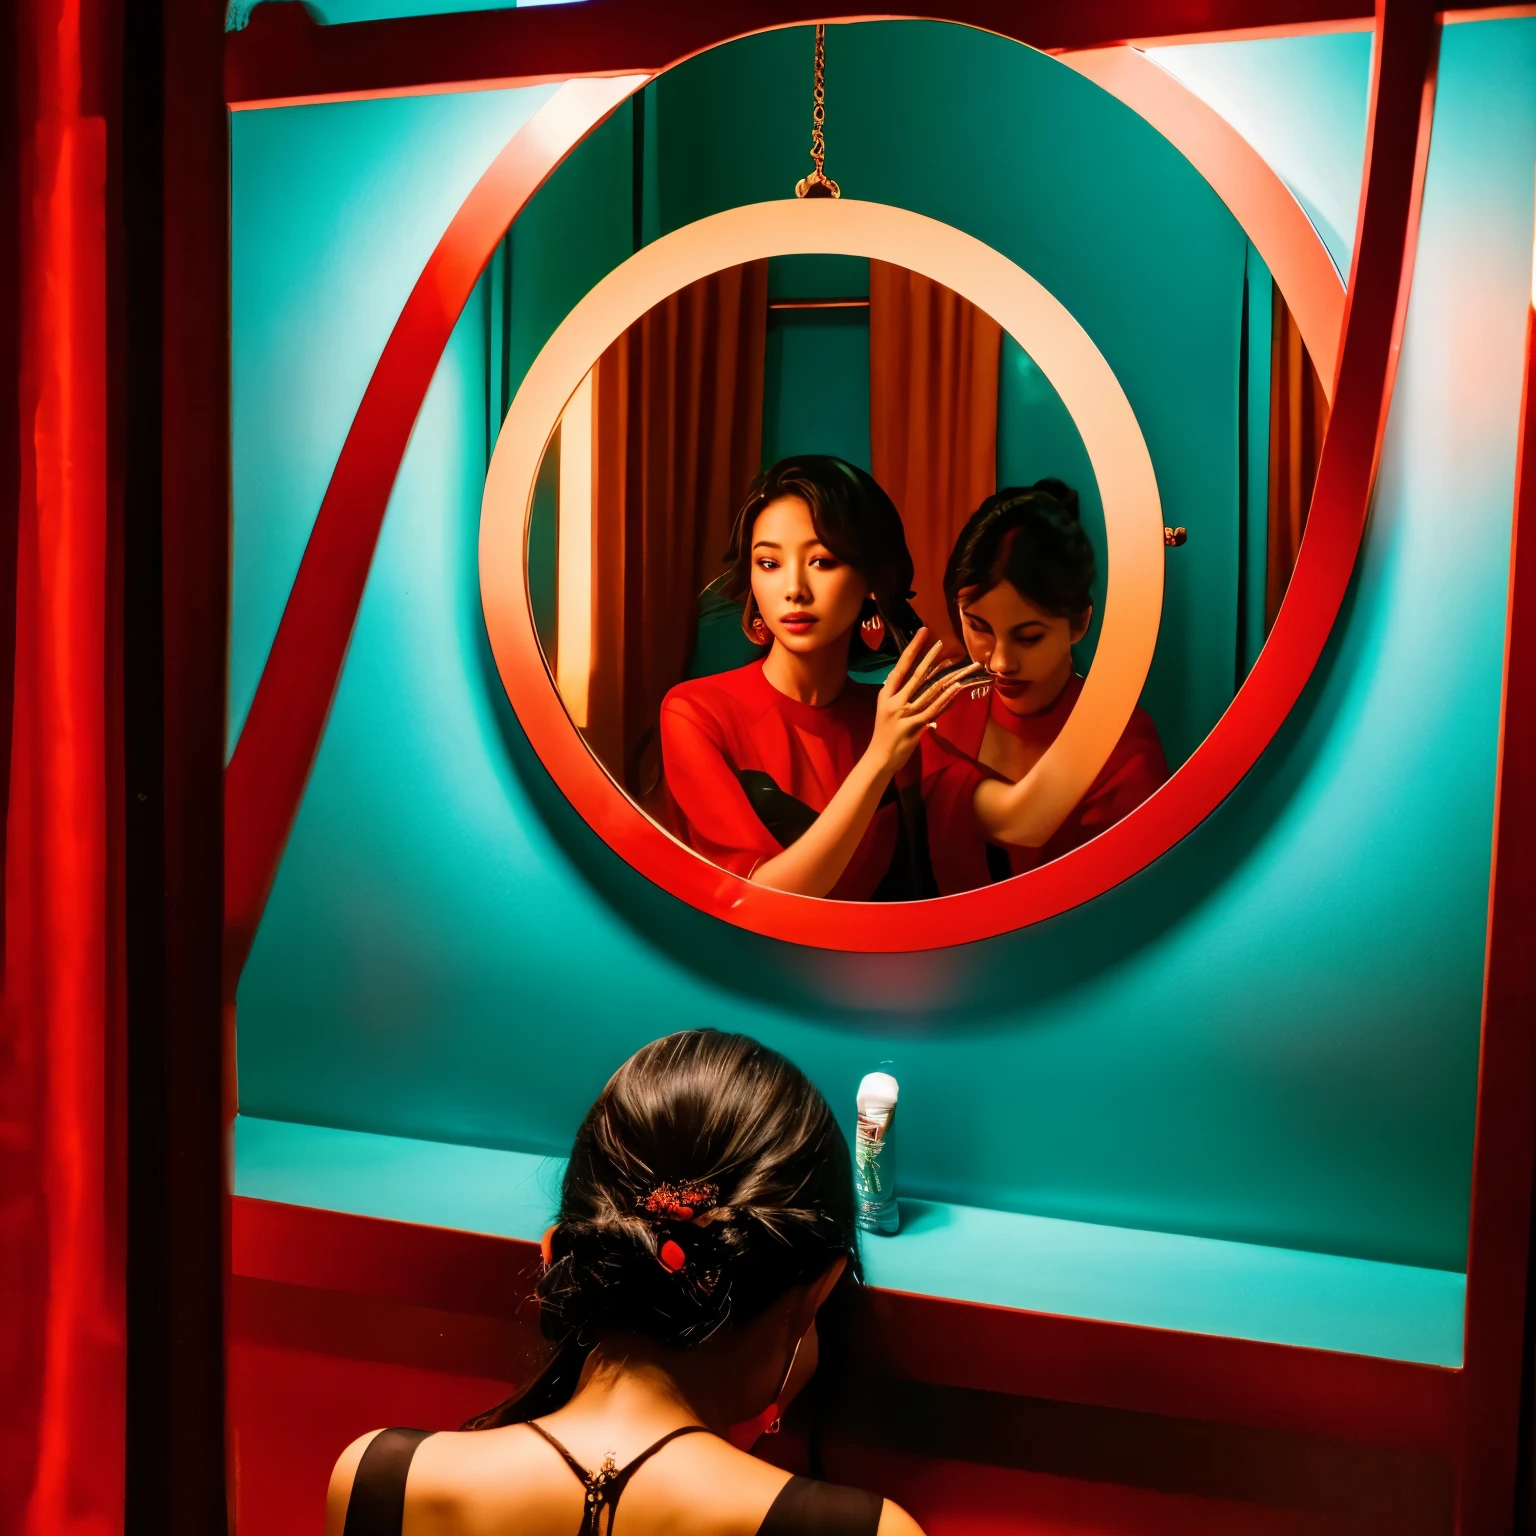 امرأة تأخذ في المرآة, فان تشي, الأرابيسك, أحمر, صورة ثلاثية الأبعاد